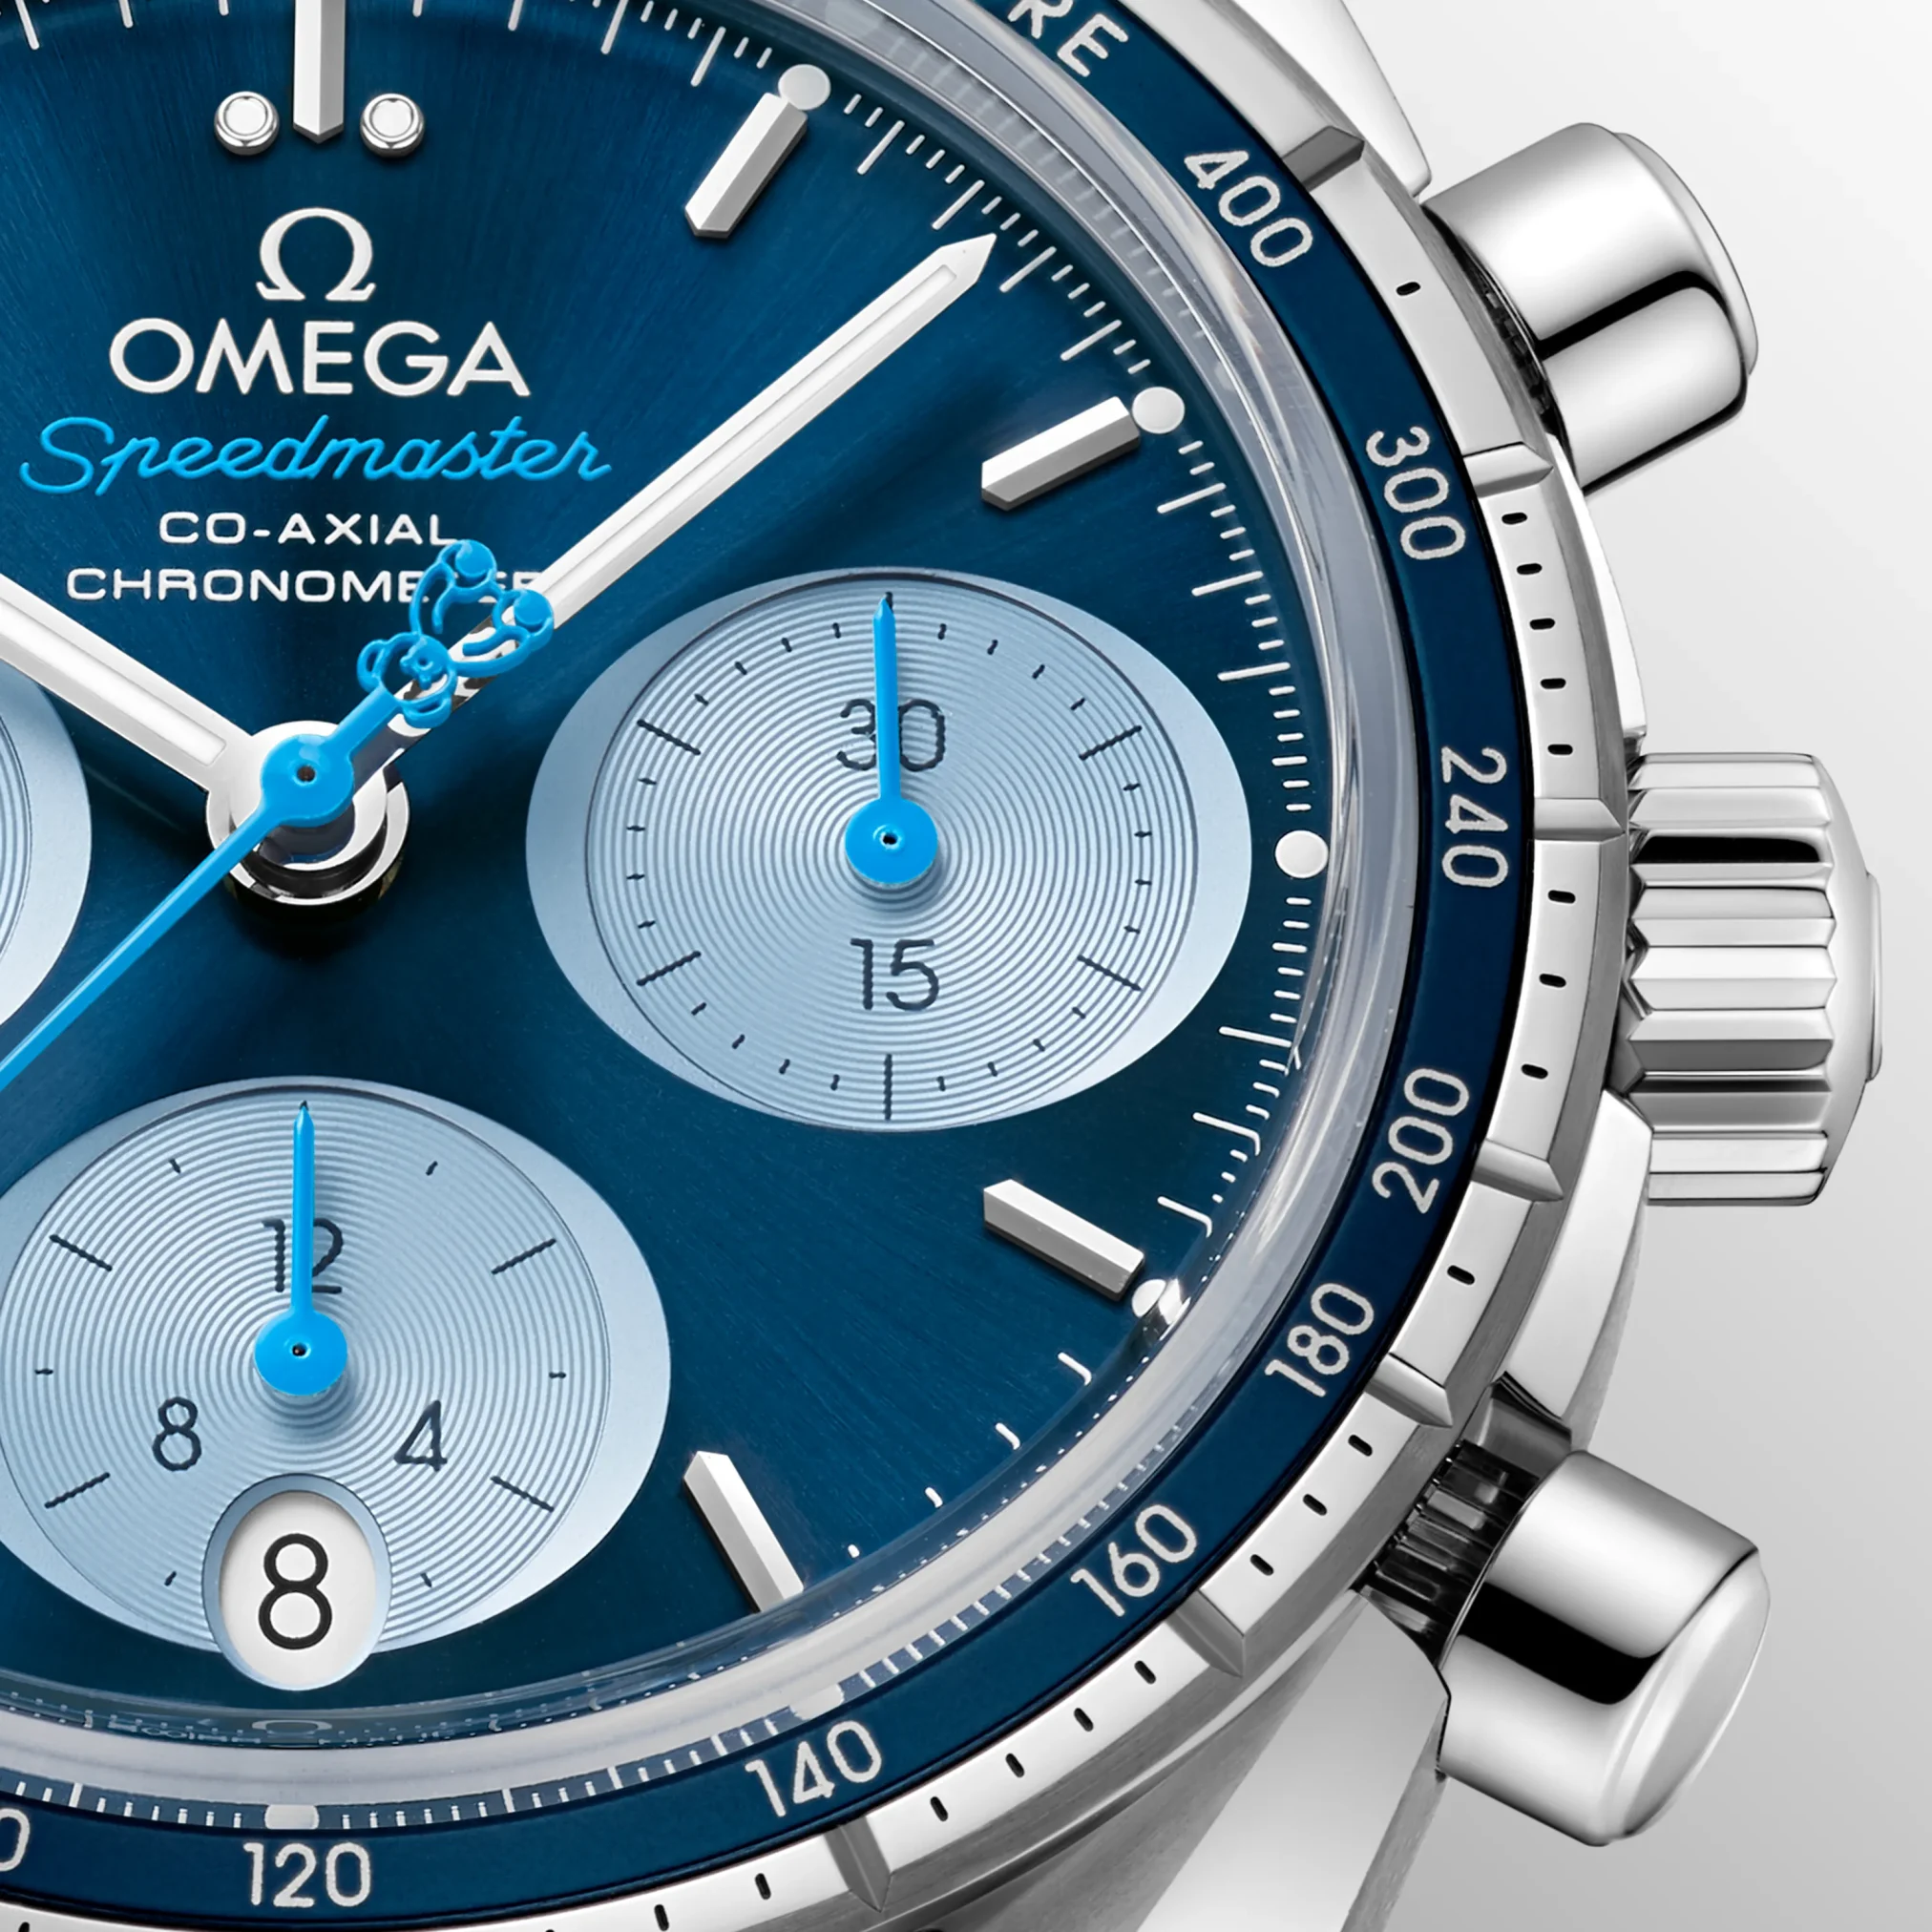 Đồng hồ Omega Speedmaster Orbis Edition 324.30.38.50.03.002 mặt số màu xanh. Dây đeo bằng thép. Thân vỏ bằng thép.